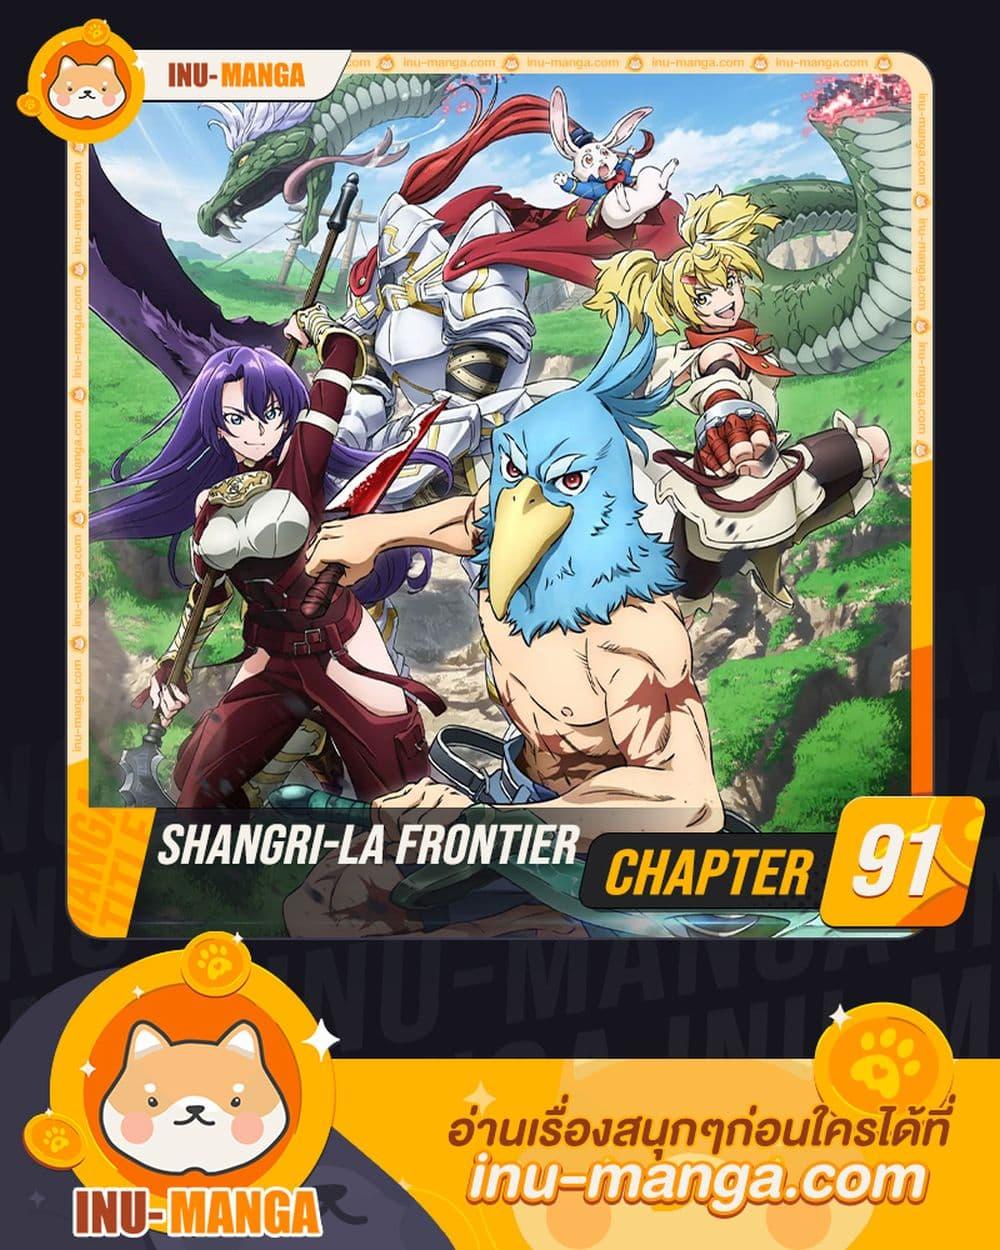 Shangri La Frontier 91 01